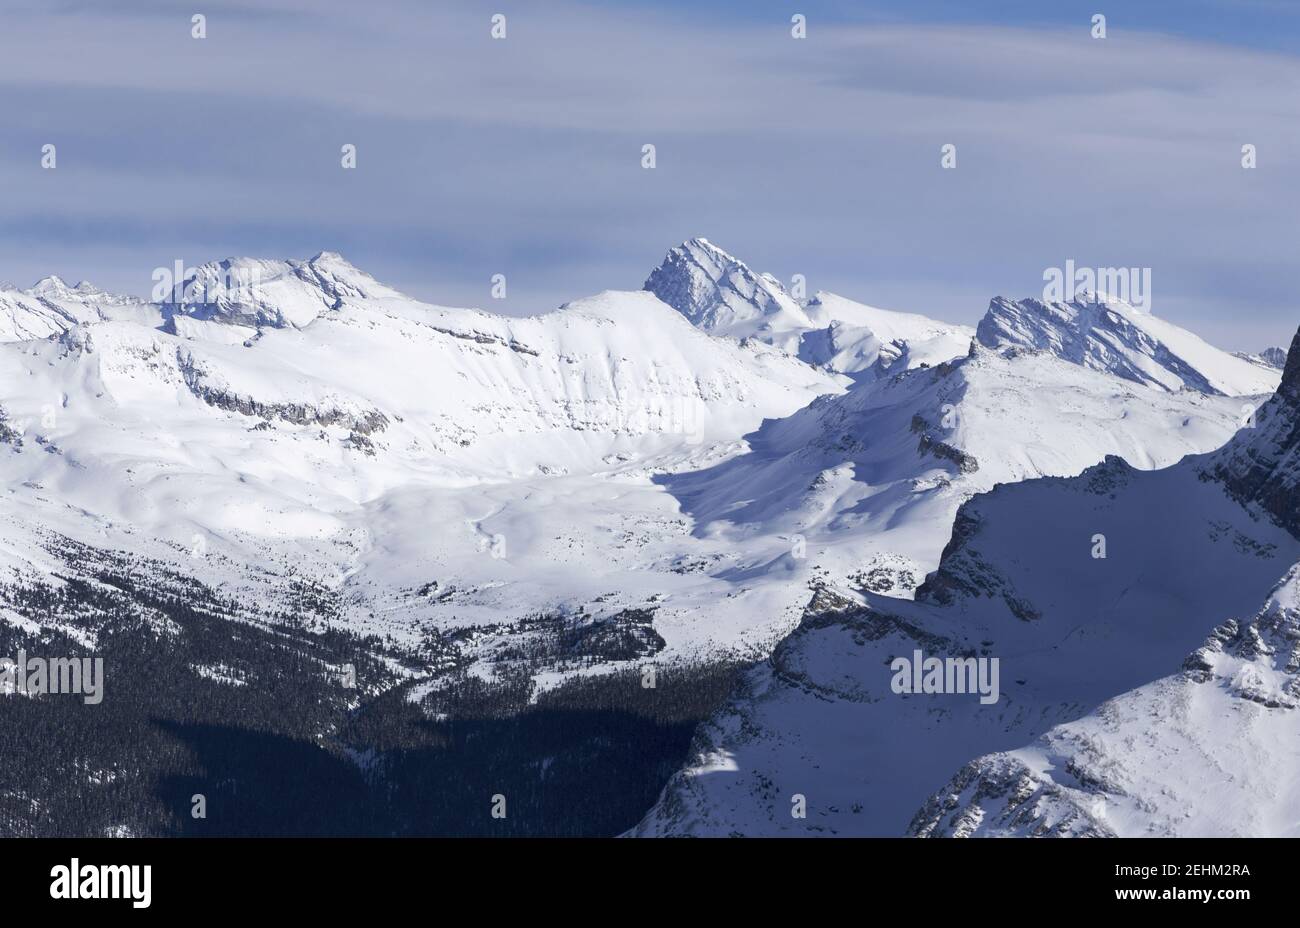 Vue aérienne sur les sommets enneigés des montagnes et la vallée alpine. Winter Rock escalade dans le parc national Banff, dans les Rocheuses canadiennes Banque D'Images